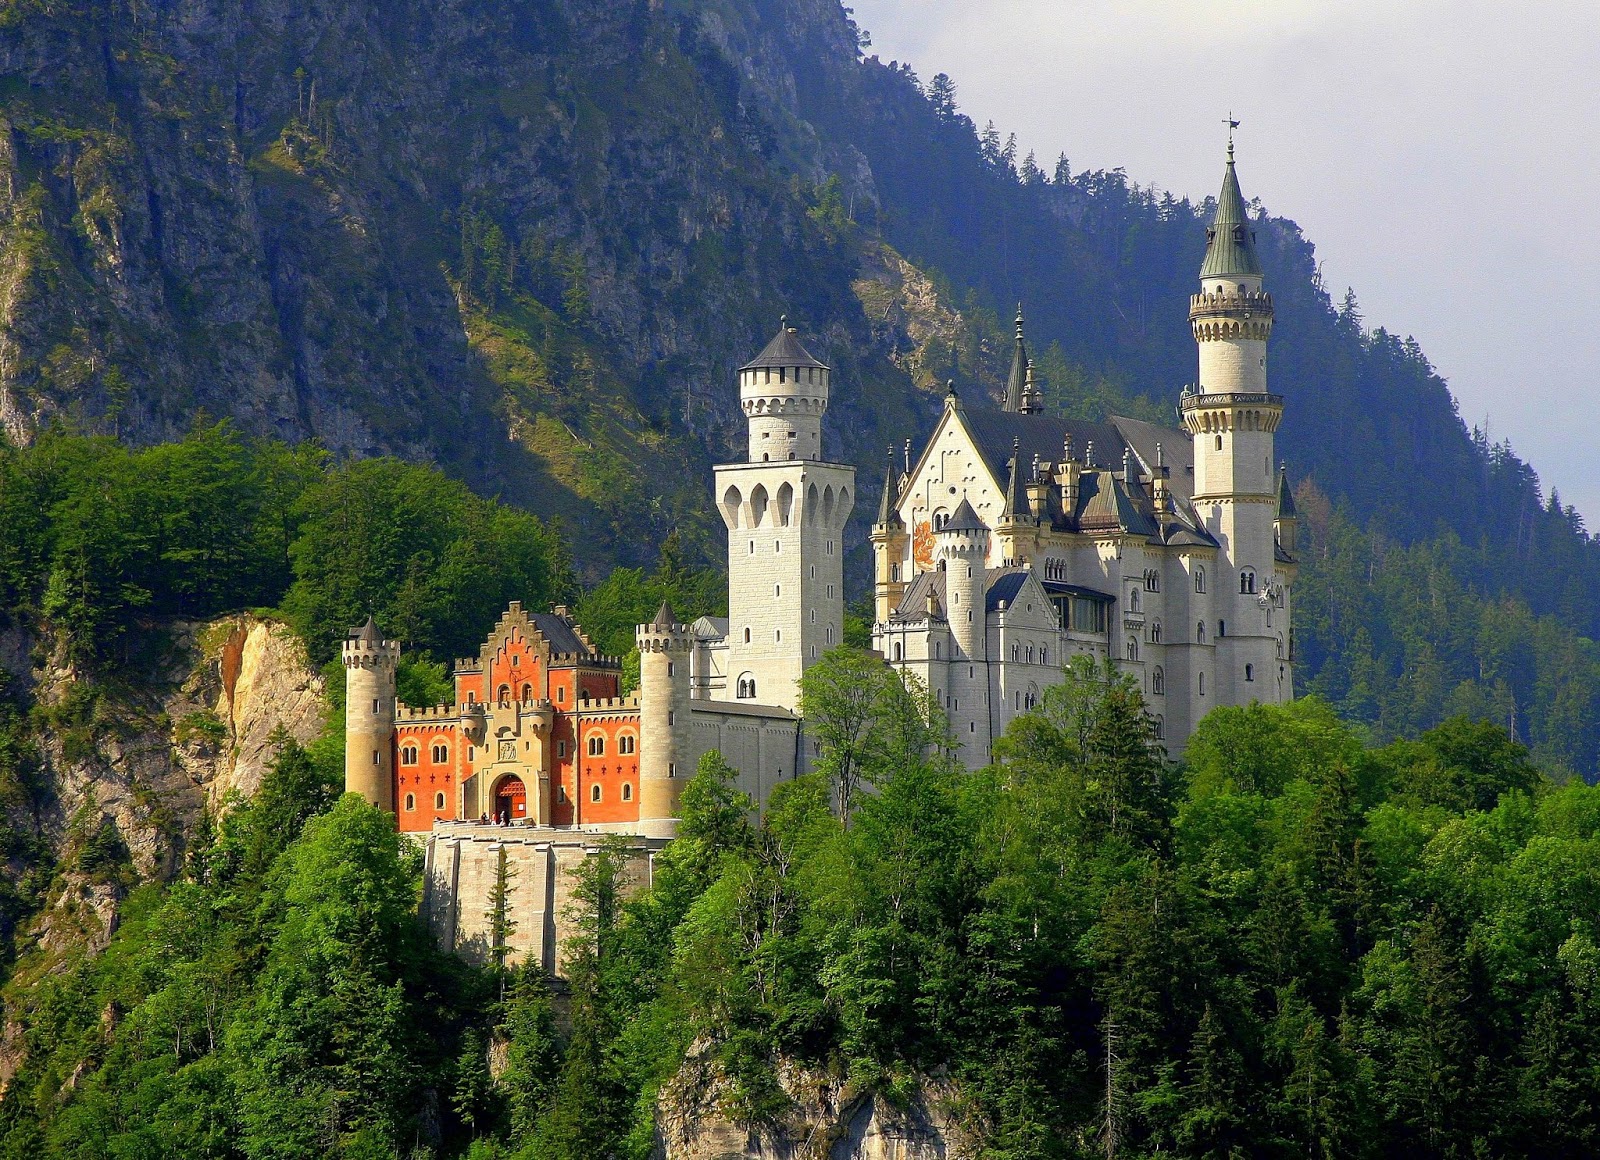 fond d'écran du château de neuschwanstein,station de montagne,la nature,paysage naturel,château,ch teau